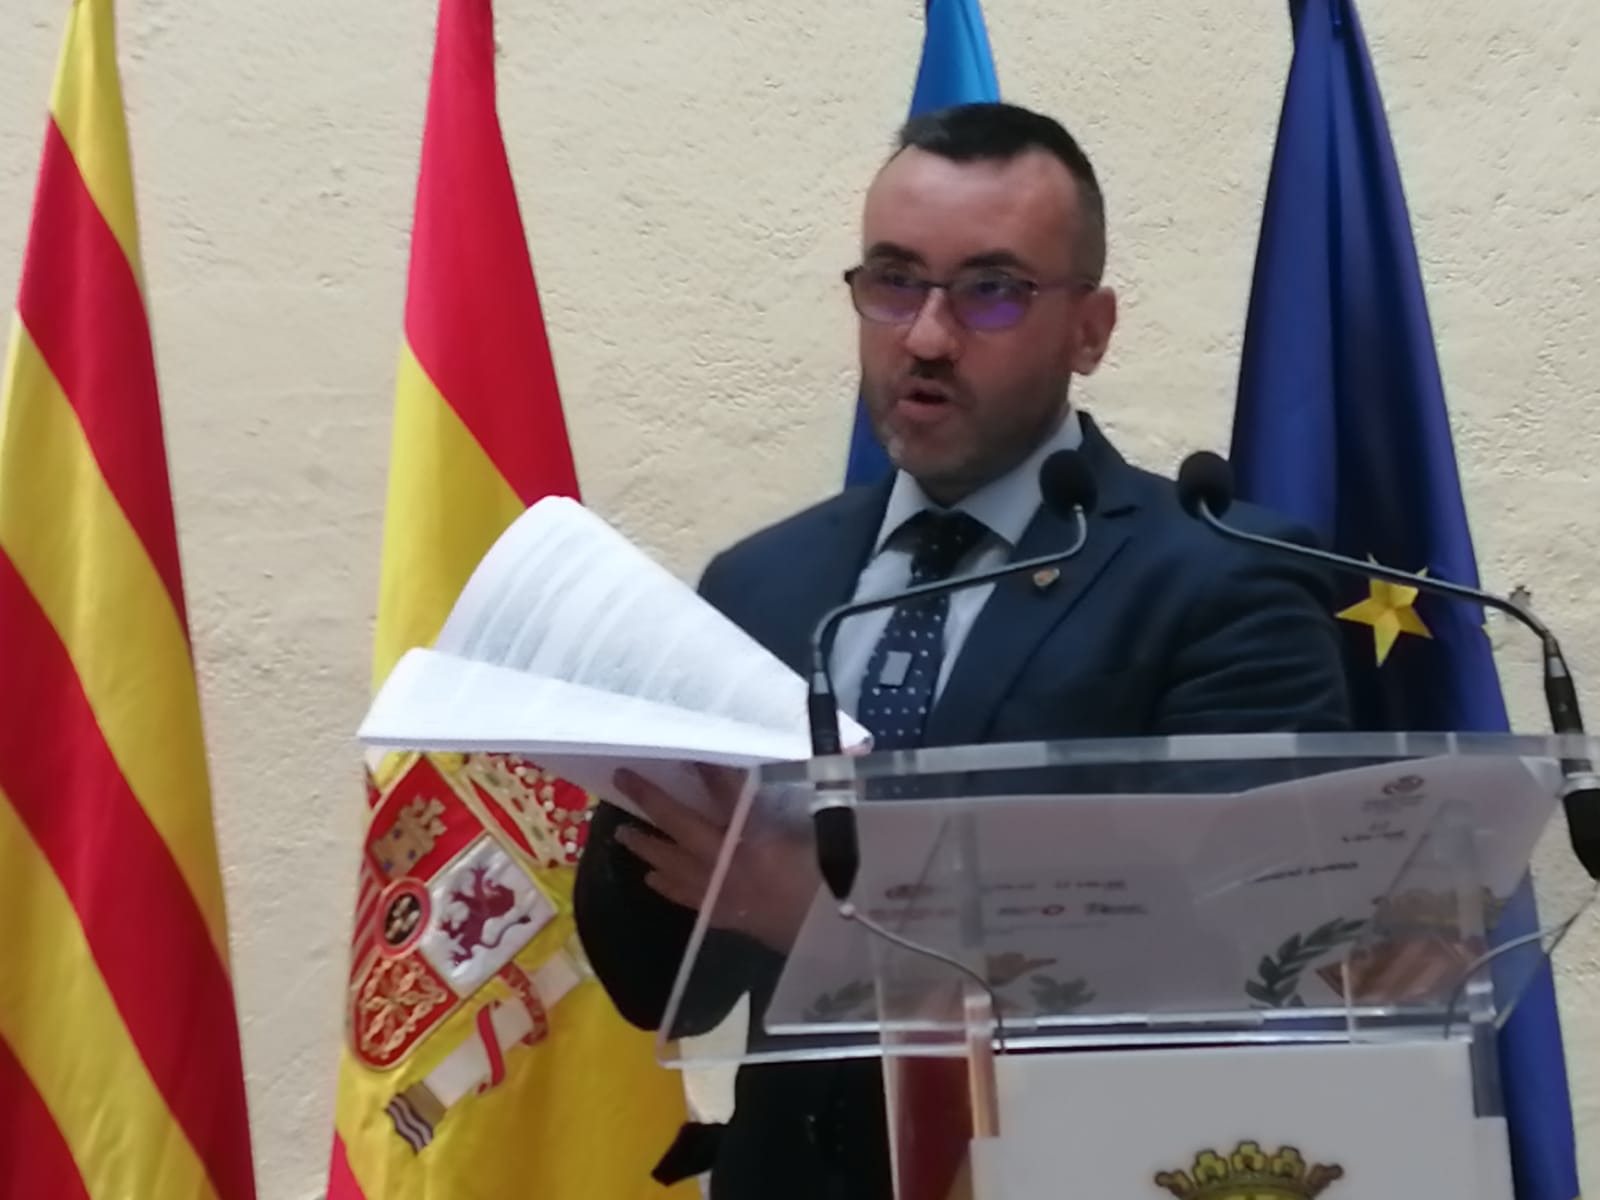 Imagen del alcalde de Vila-real con unos papeles en las manos que es la sentencia del Caso PIAF